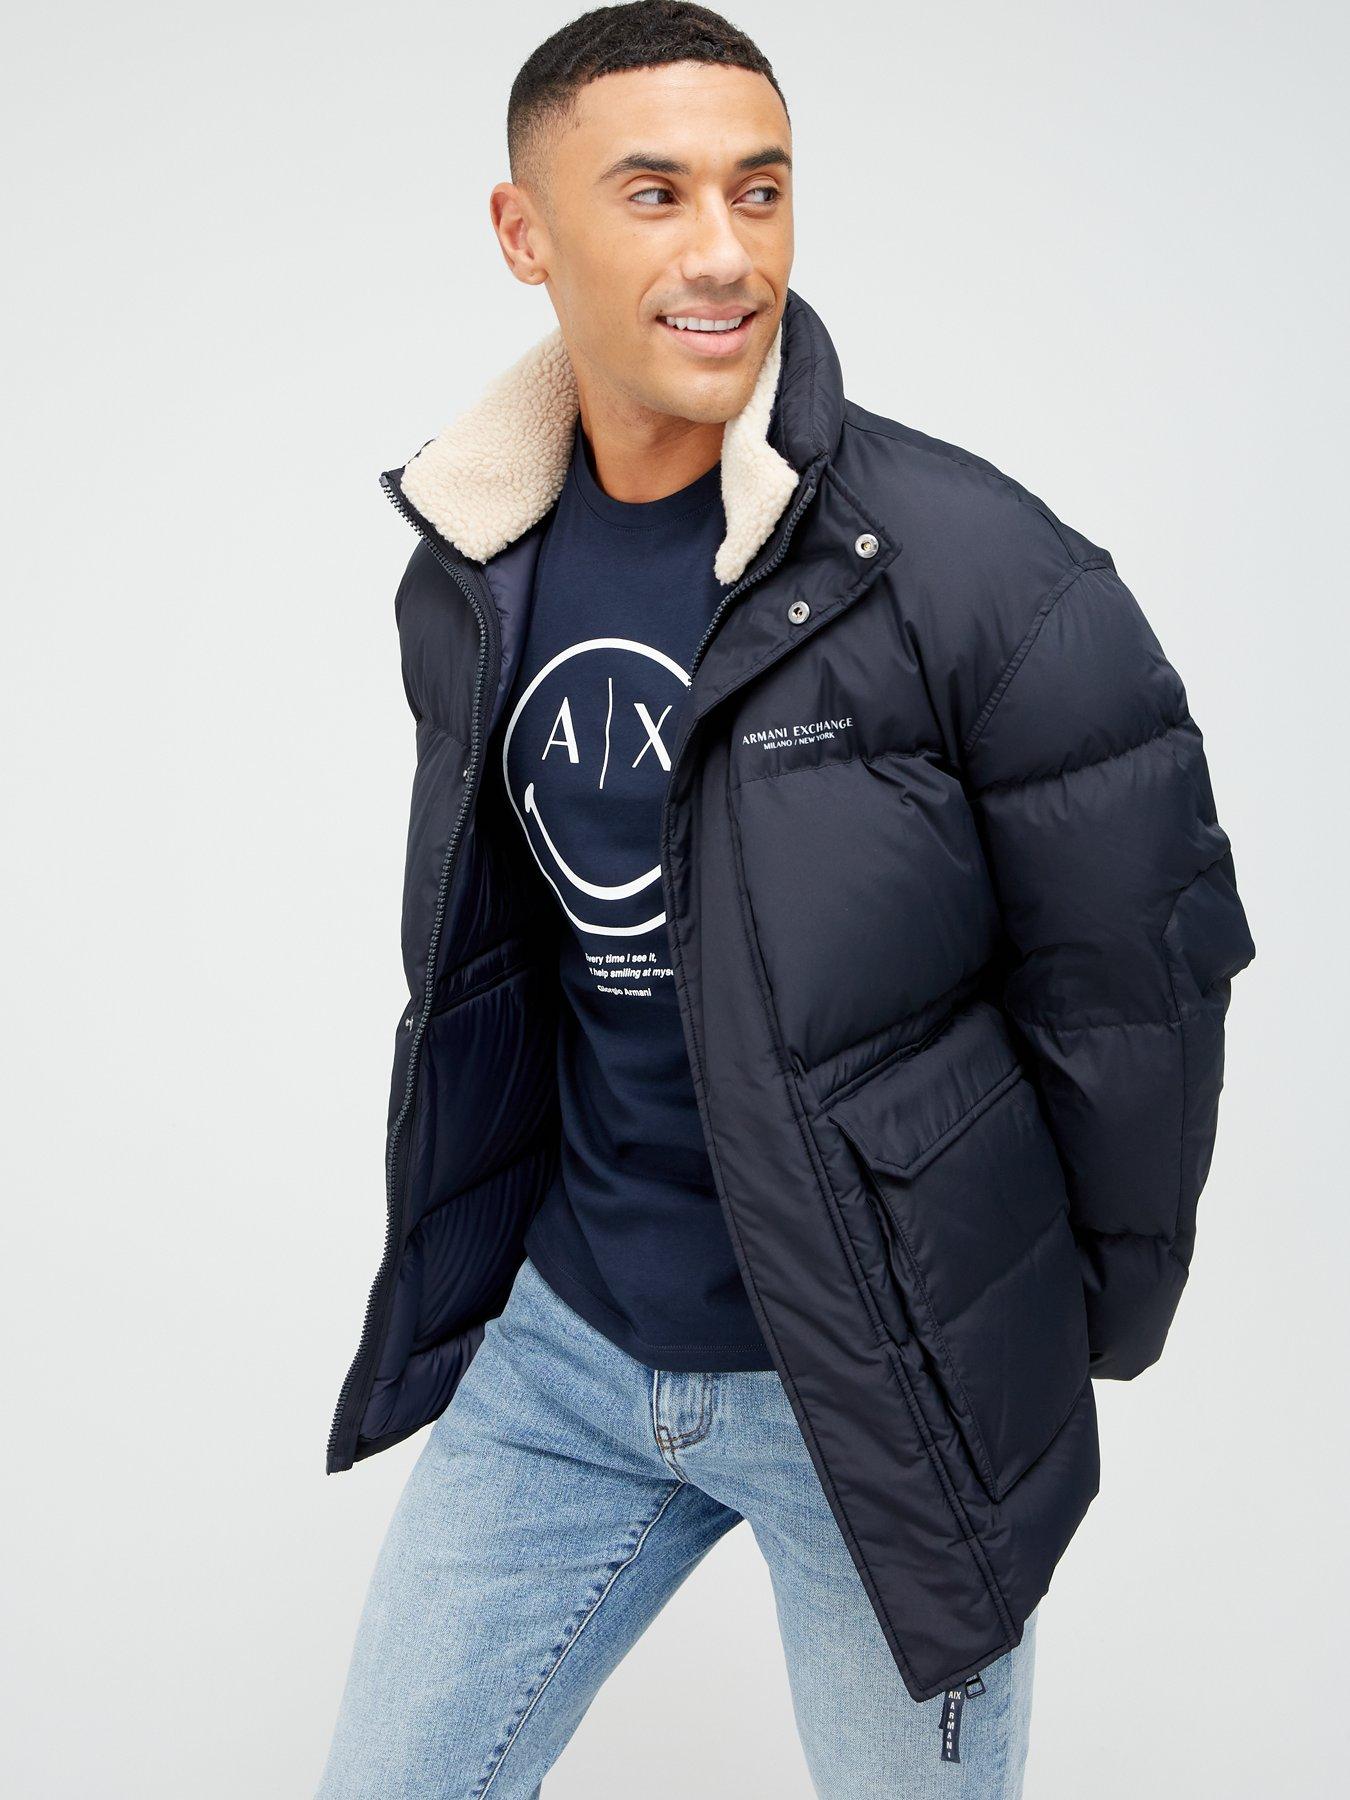 Armani exchange | Coats & jackets | Men | Very Ireland